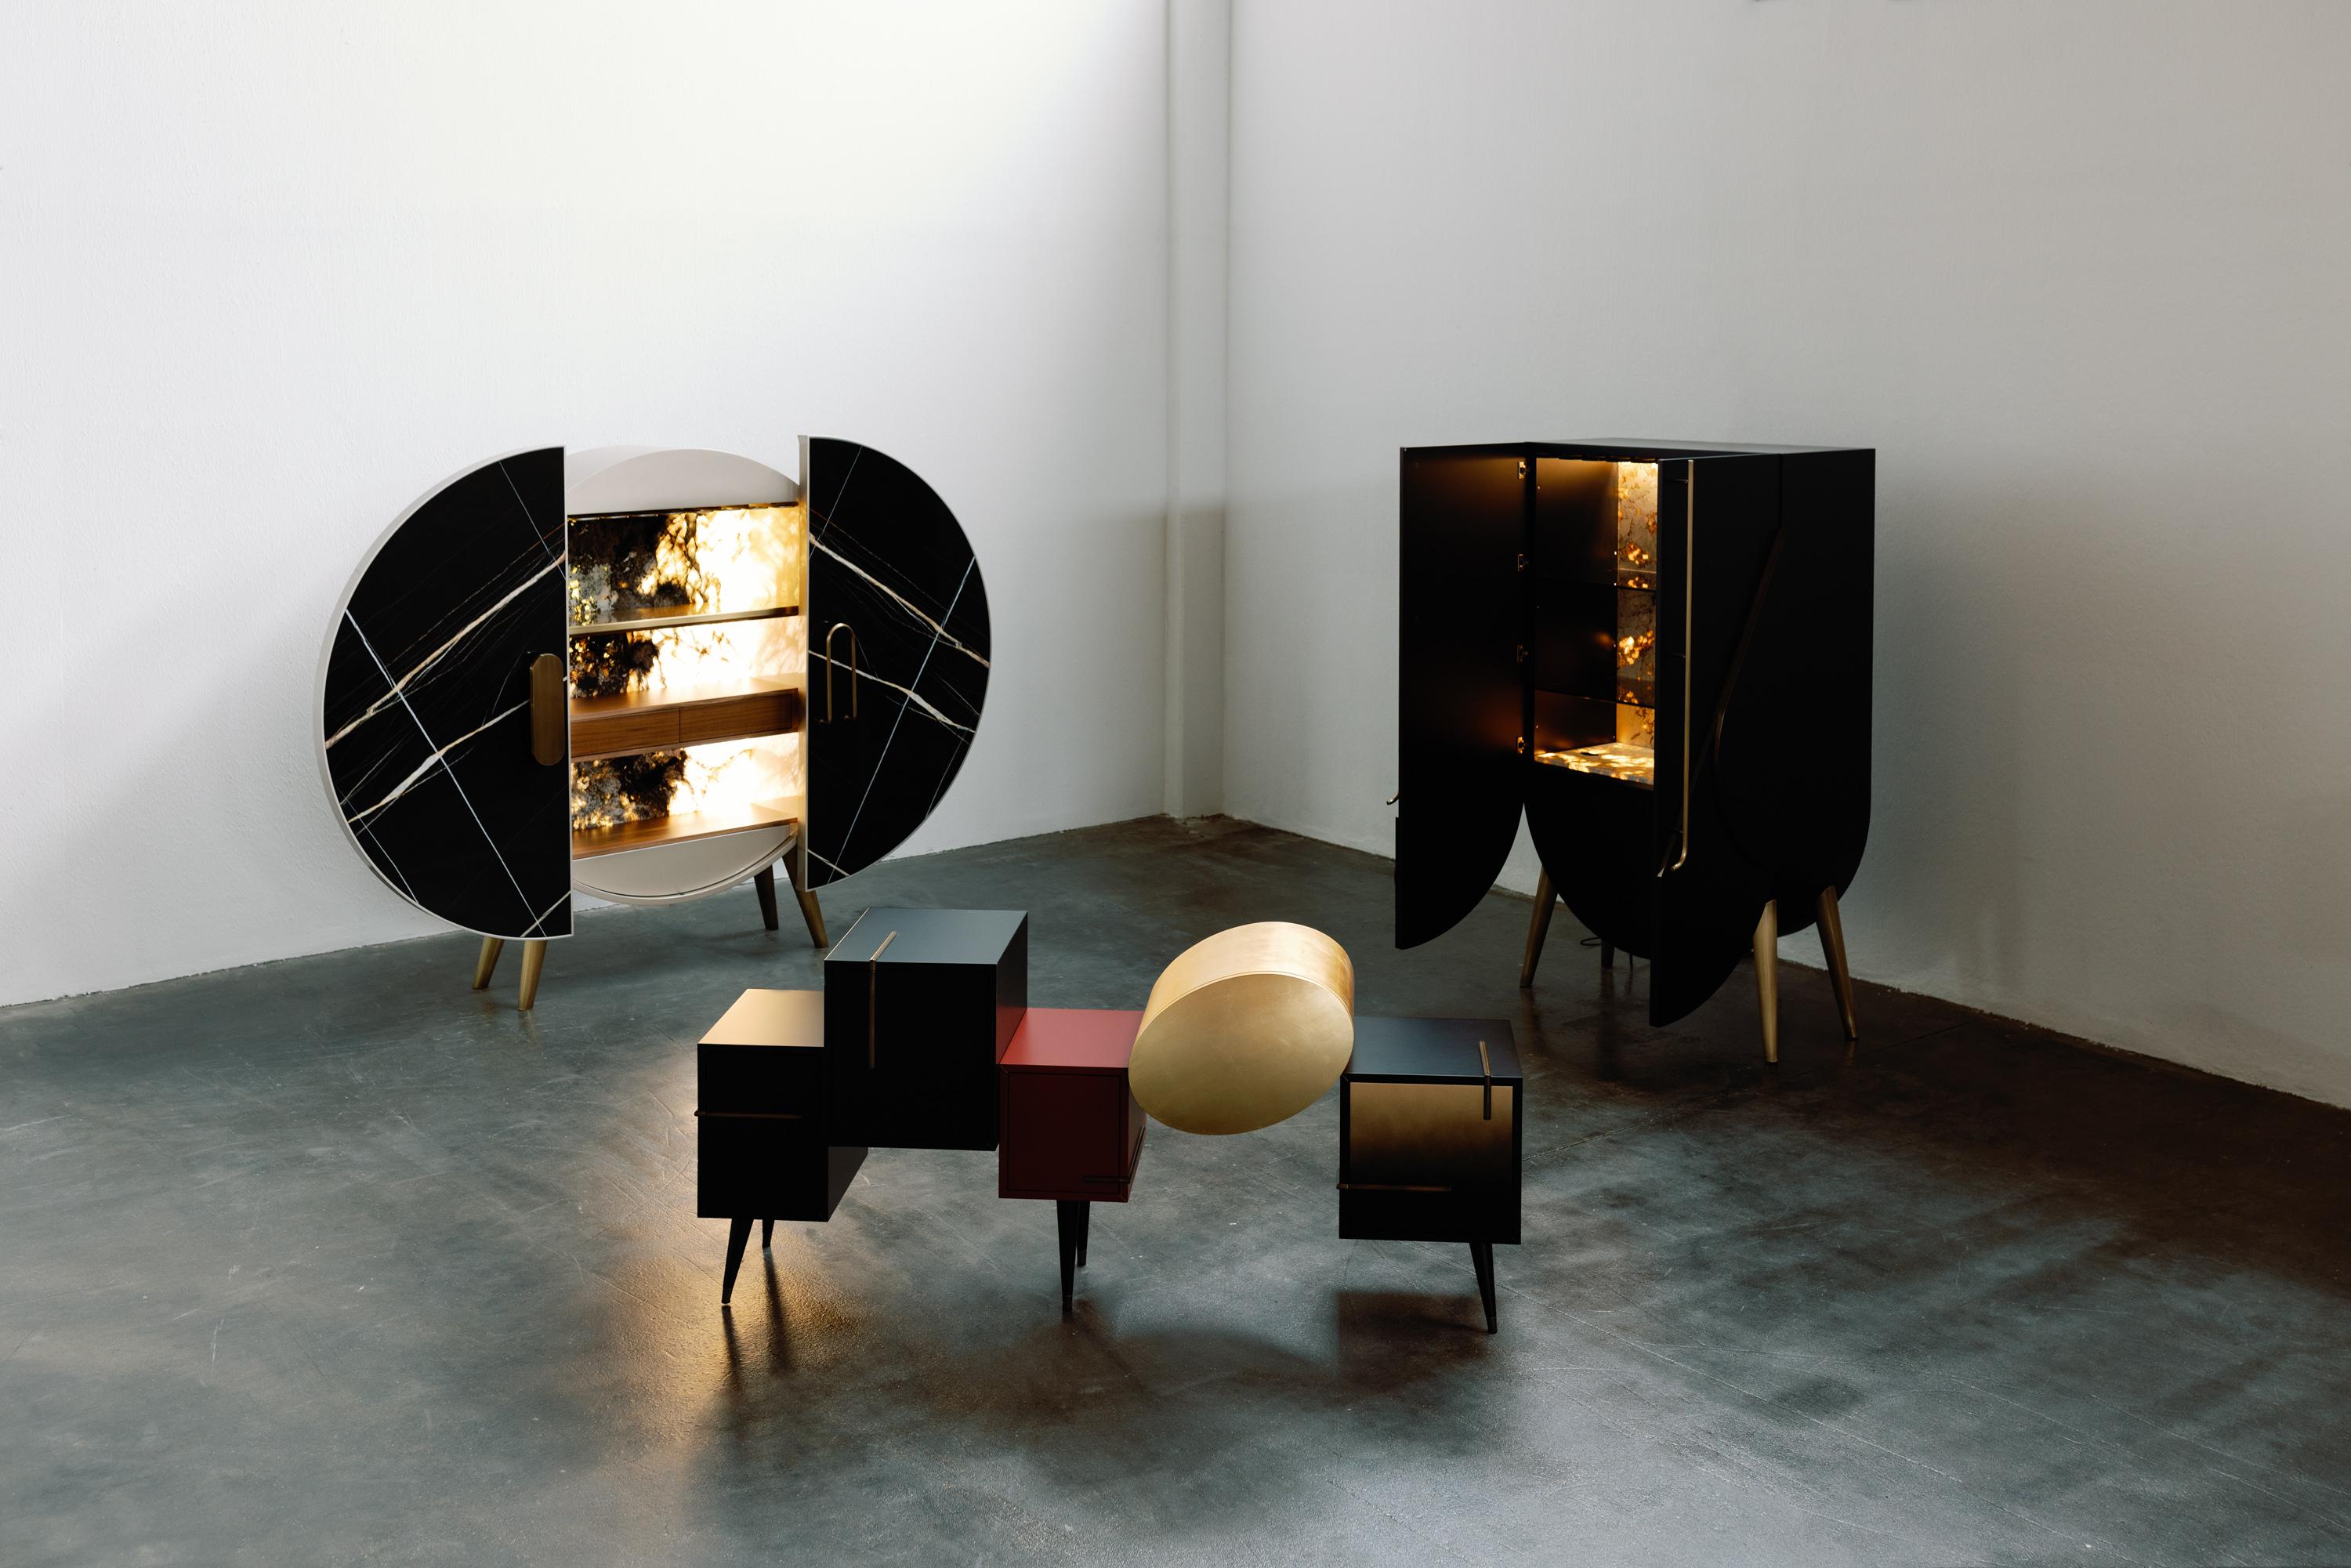 Sunshine Sideboard, Collection'S Contemporary, handgefertigt in Portugal - Europa von Greenapple.

Das moderne Sideboard Sunshine spielt mit Licht und Schatten geometrischer Formen und präsentiert ein einzigartiges und unverwechselbares Design für